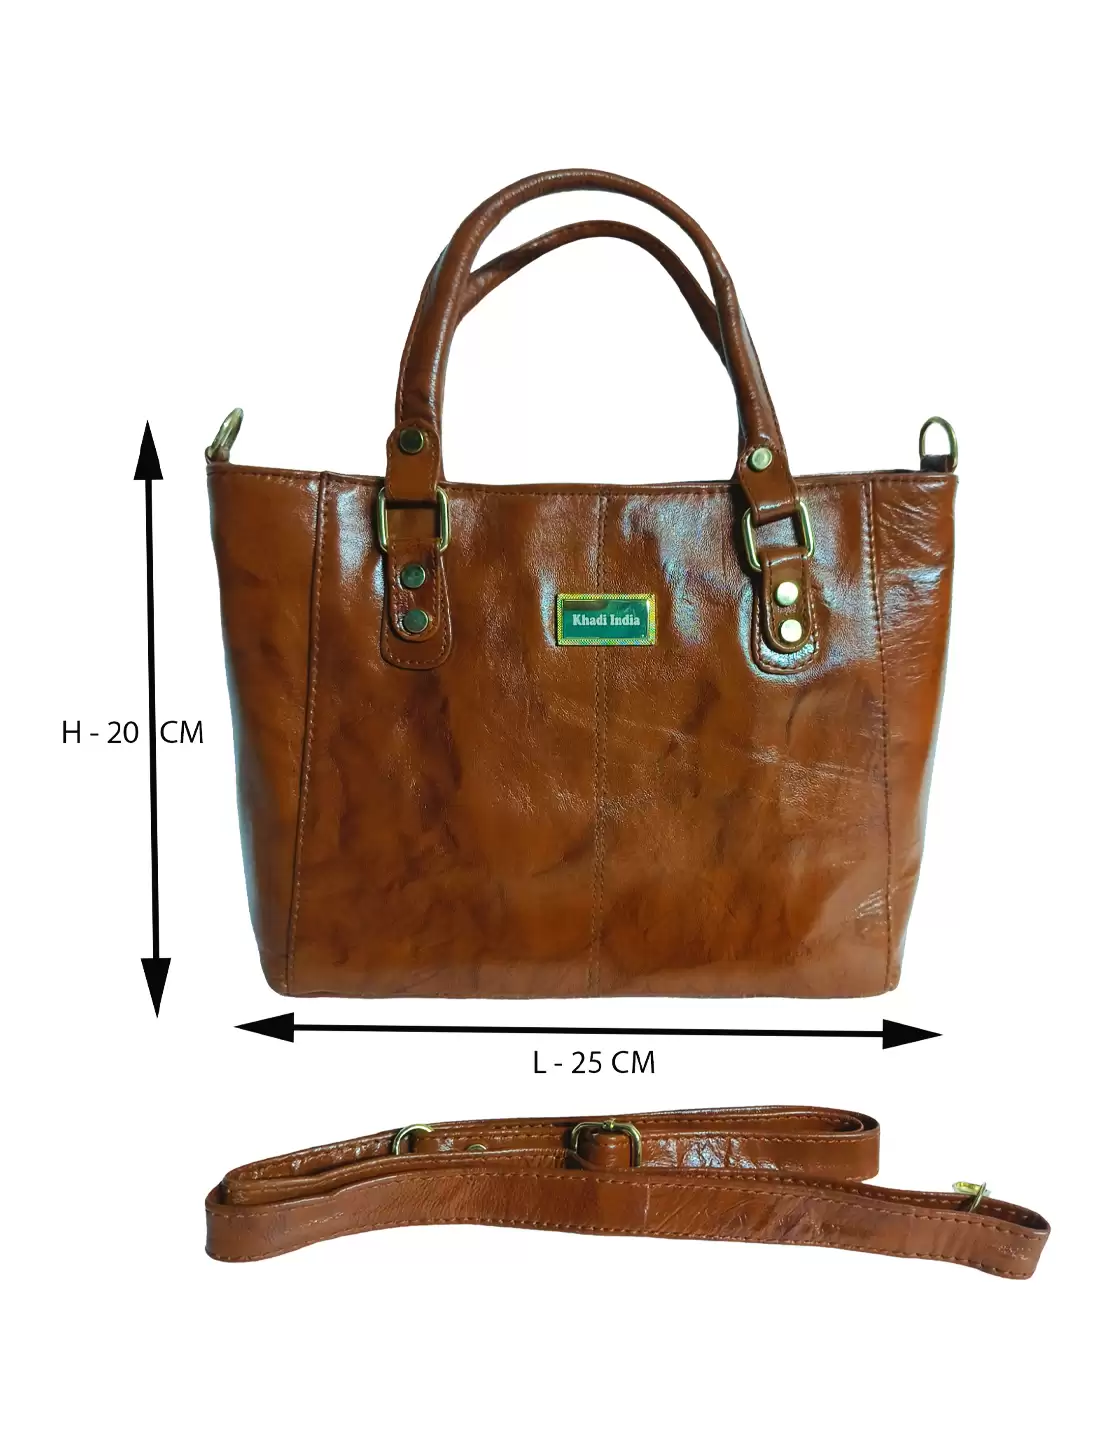 Oval Shaped Crewel Bag | Crewel Bag | Shoulder Bag